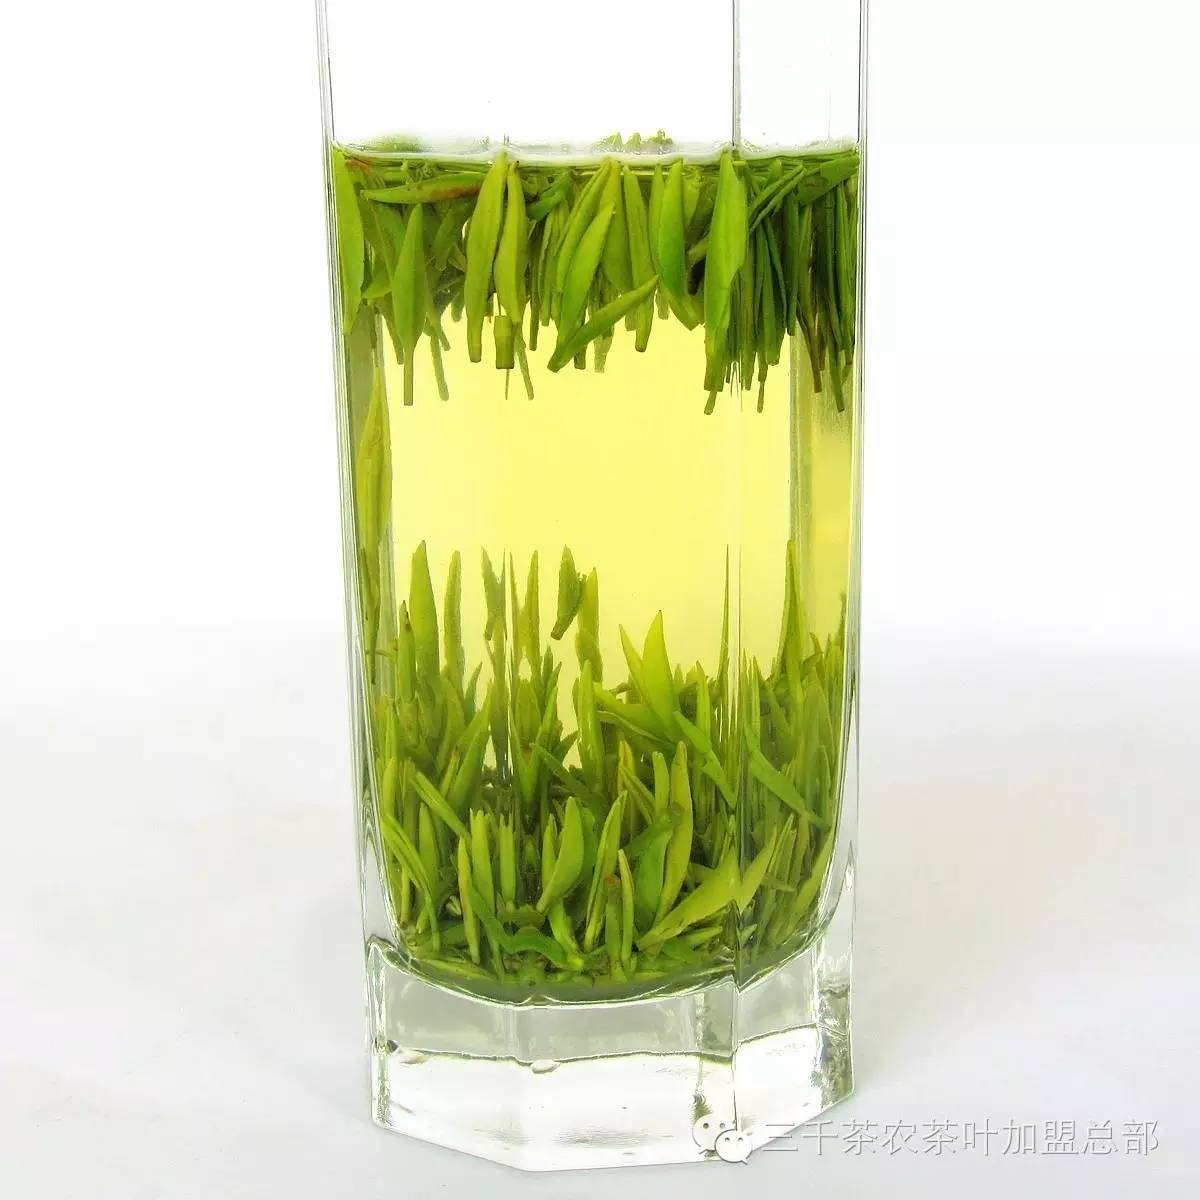 陈腐绿茶的外观色黄暗晦,无光泽,香气低沉,如对茶叶用口吹热气,湿润